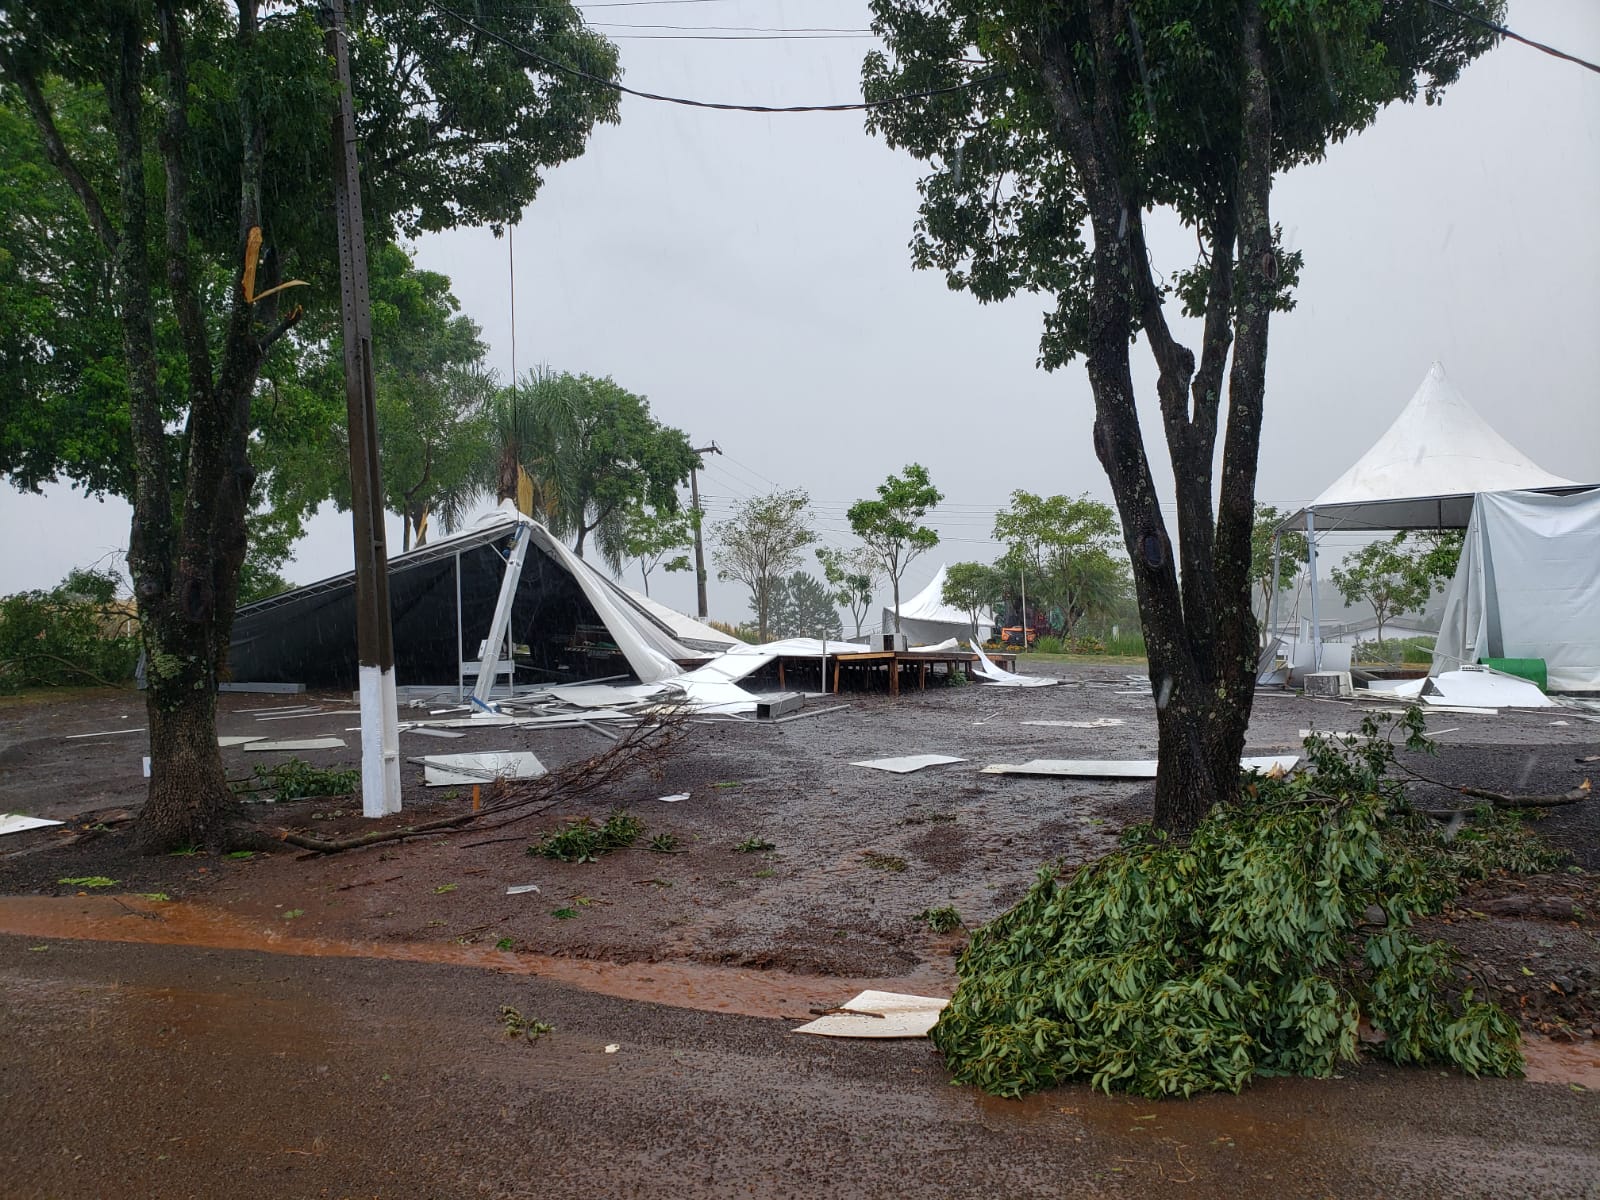 Forte temporal causa transtornos em município de Santa Catarina